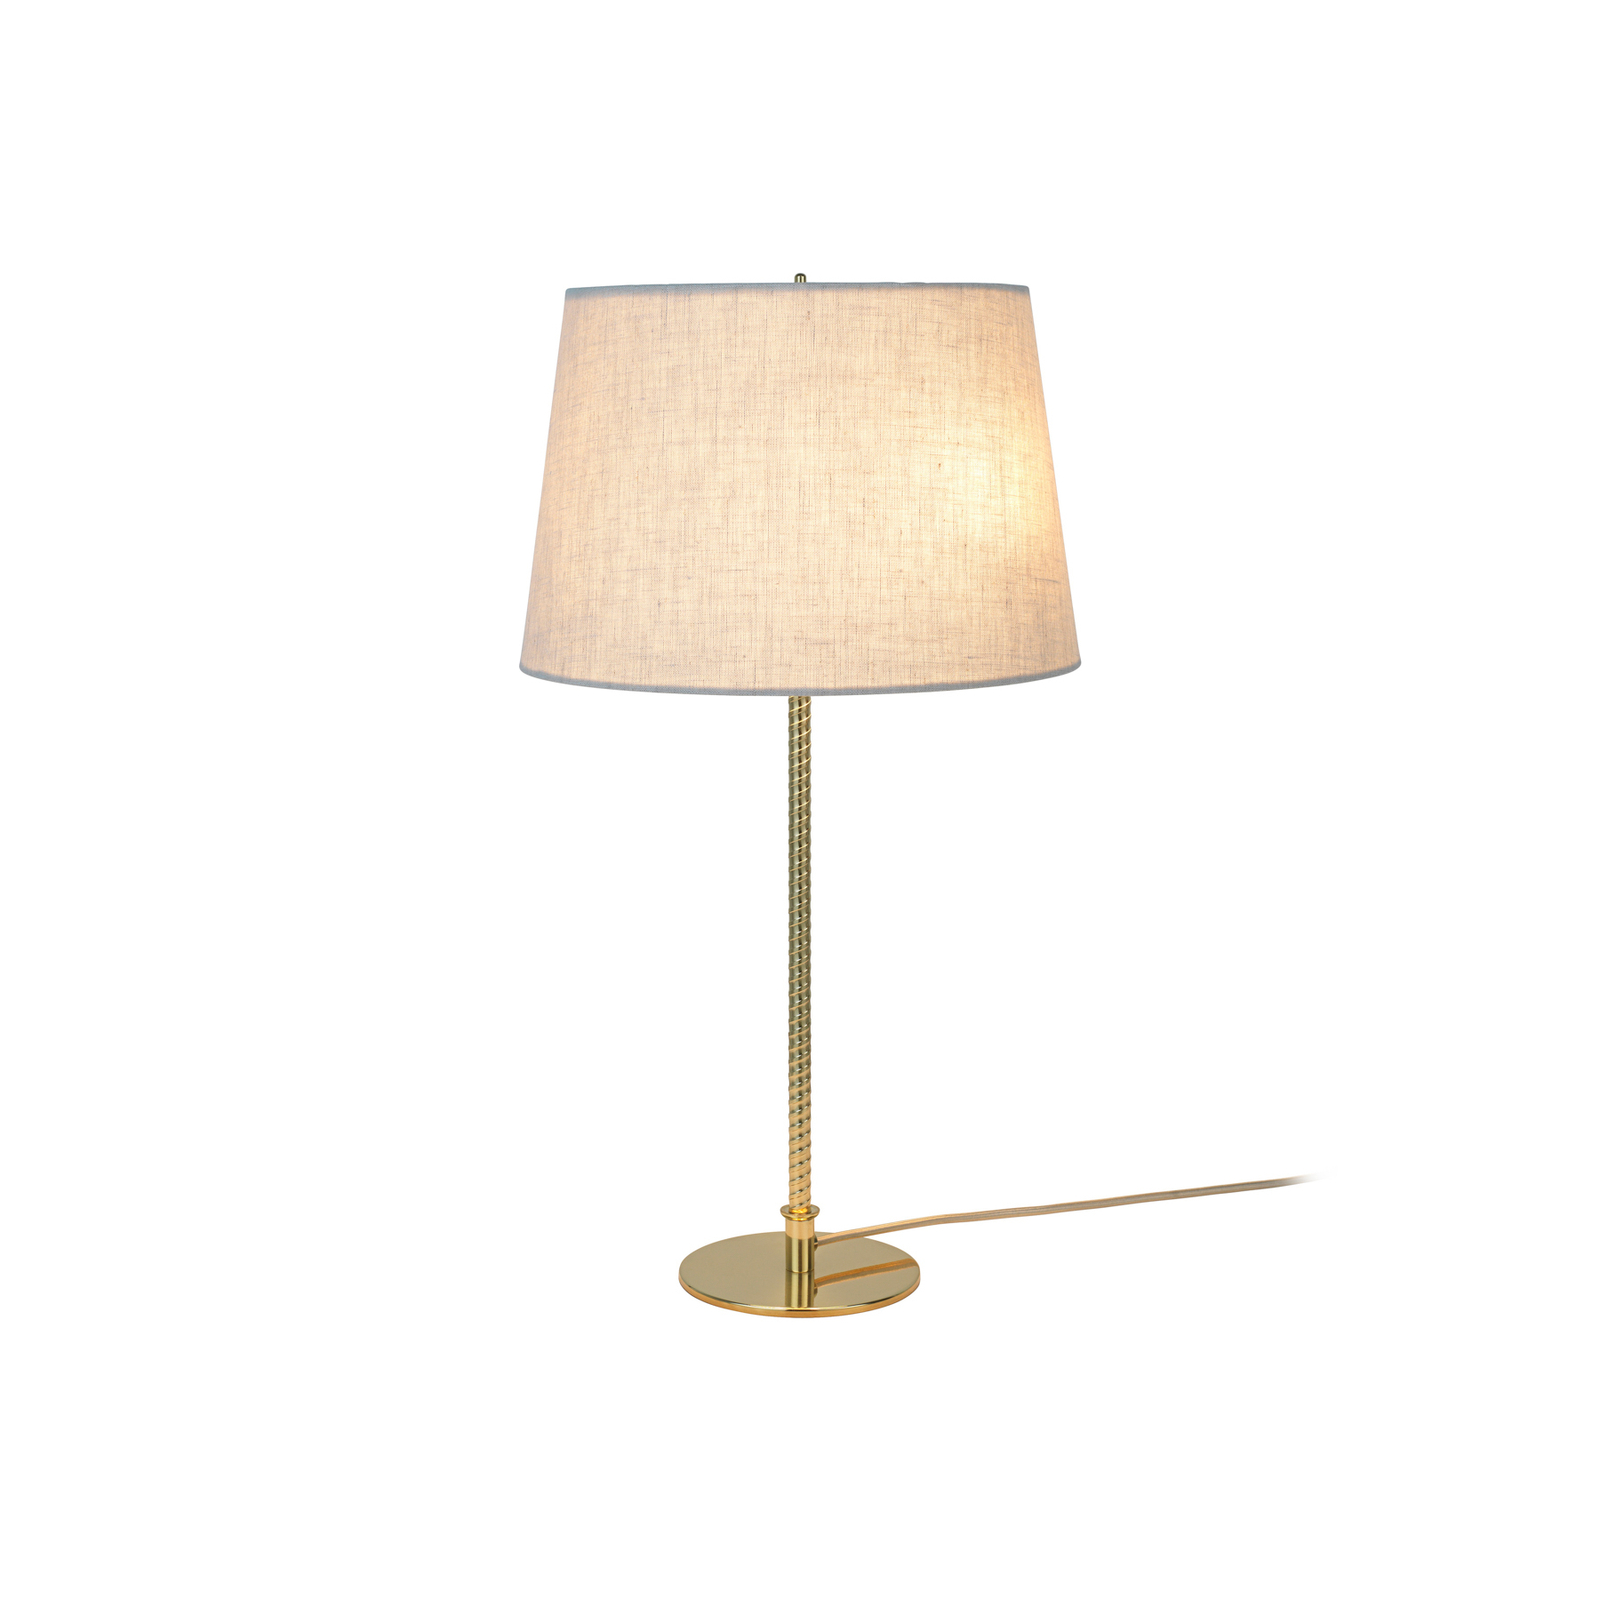 GUBI bordlampe 9205, messing, lærredsskærm, højde 58 cm